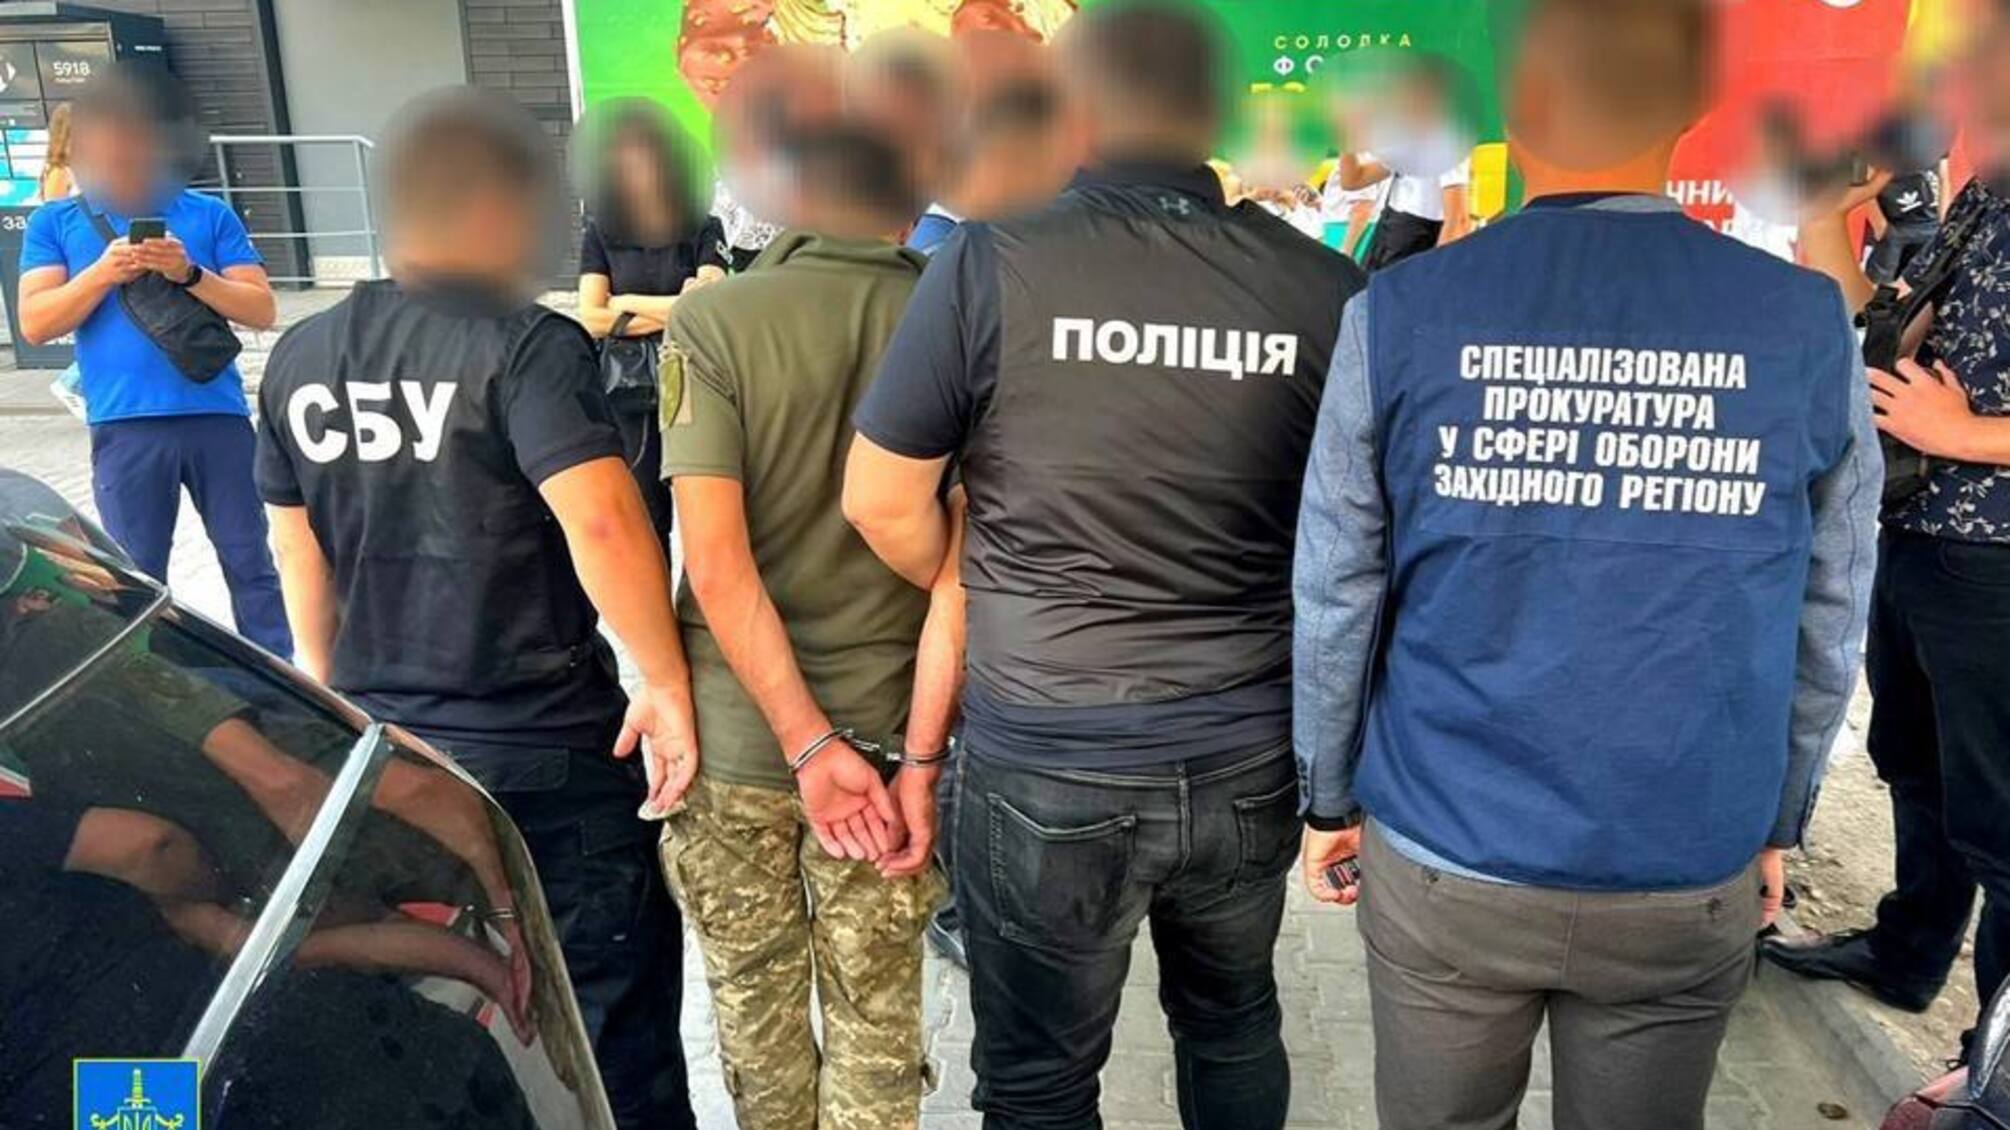 Обещал повлиять на врачебную комиссию: в Хмельницкой области работника военкомата задержали на взятке